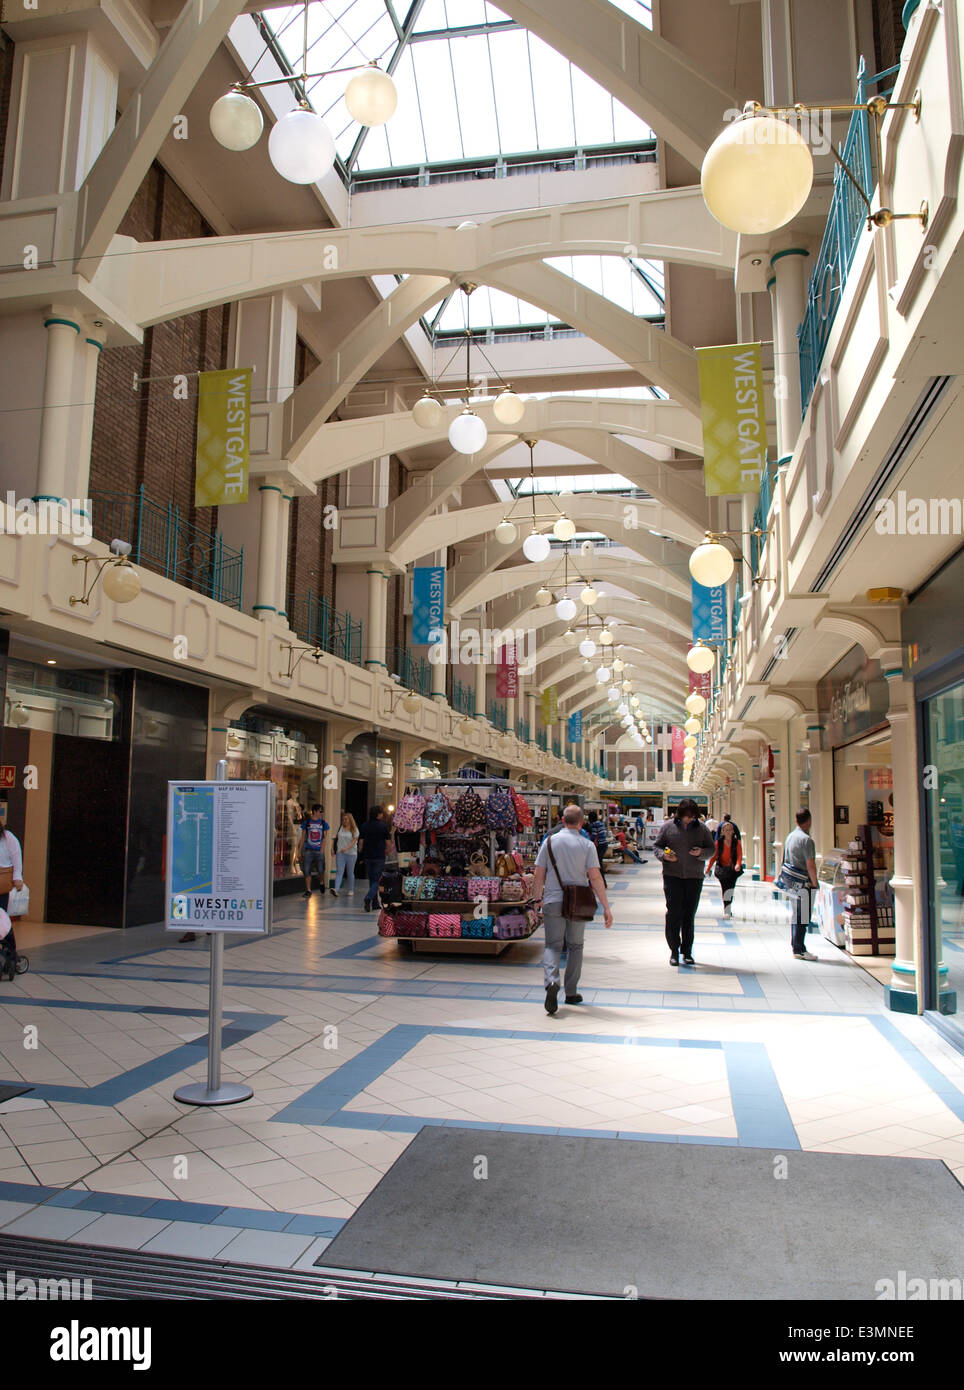 Westgate Shopping Mall Center, Oxford, Regno Unito Foto Stock